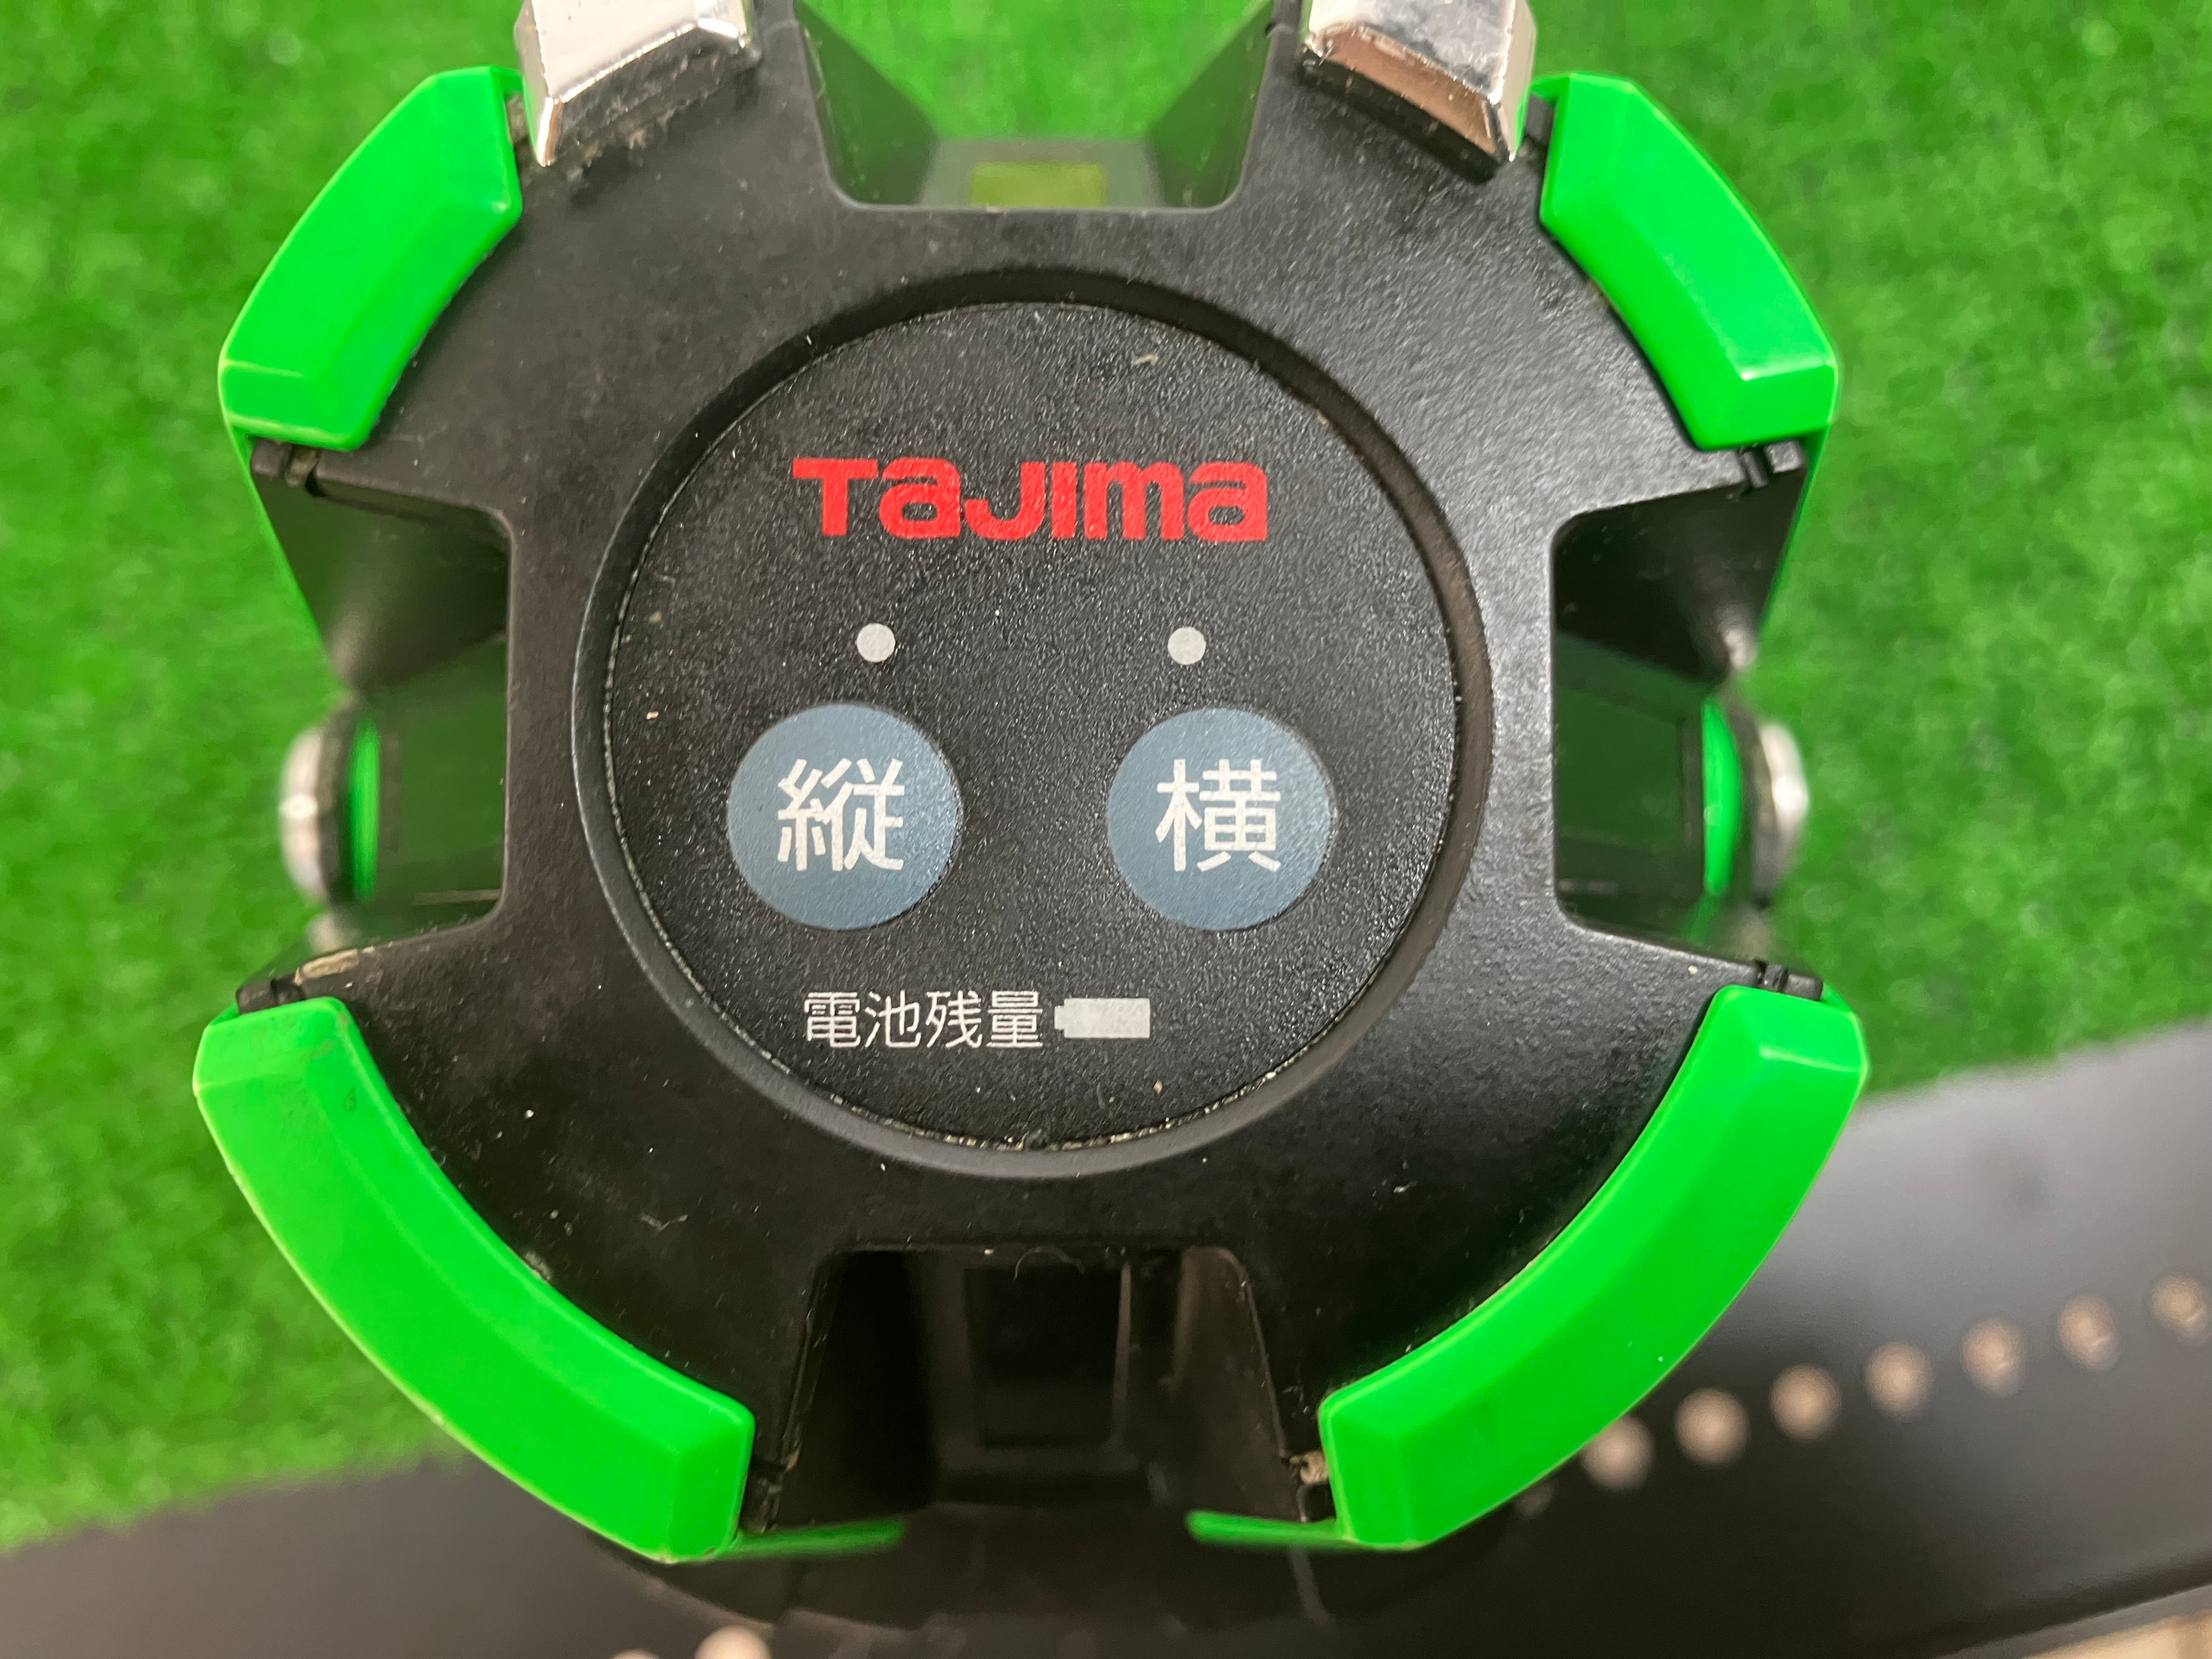 〇タジマ(Tajima) グリーンレーザー墨出し器 ZERO G ゼロジ― TYZ 縦